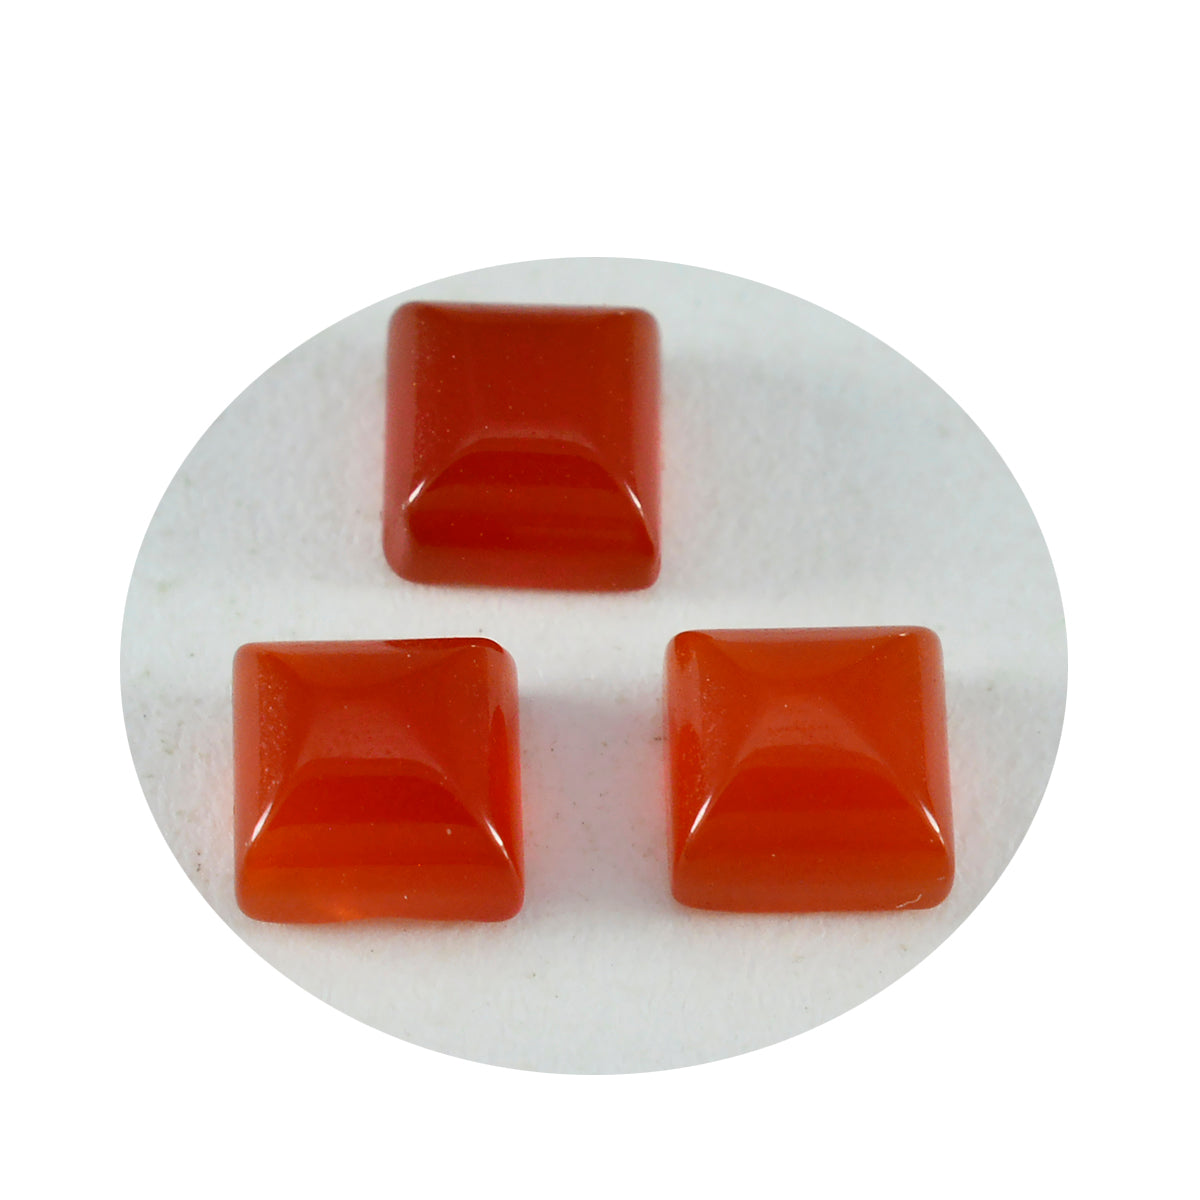 Riyogems 1PC Red Onyx Cabochon 9x9 mm Square Shape Good Quality Loose Gemstone